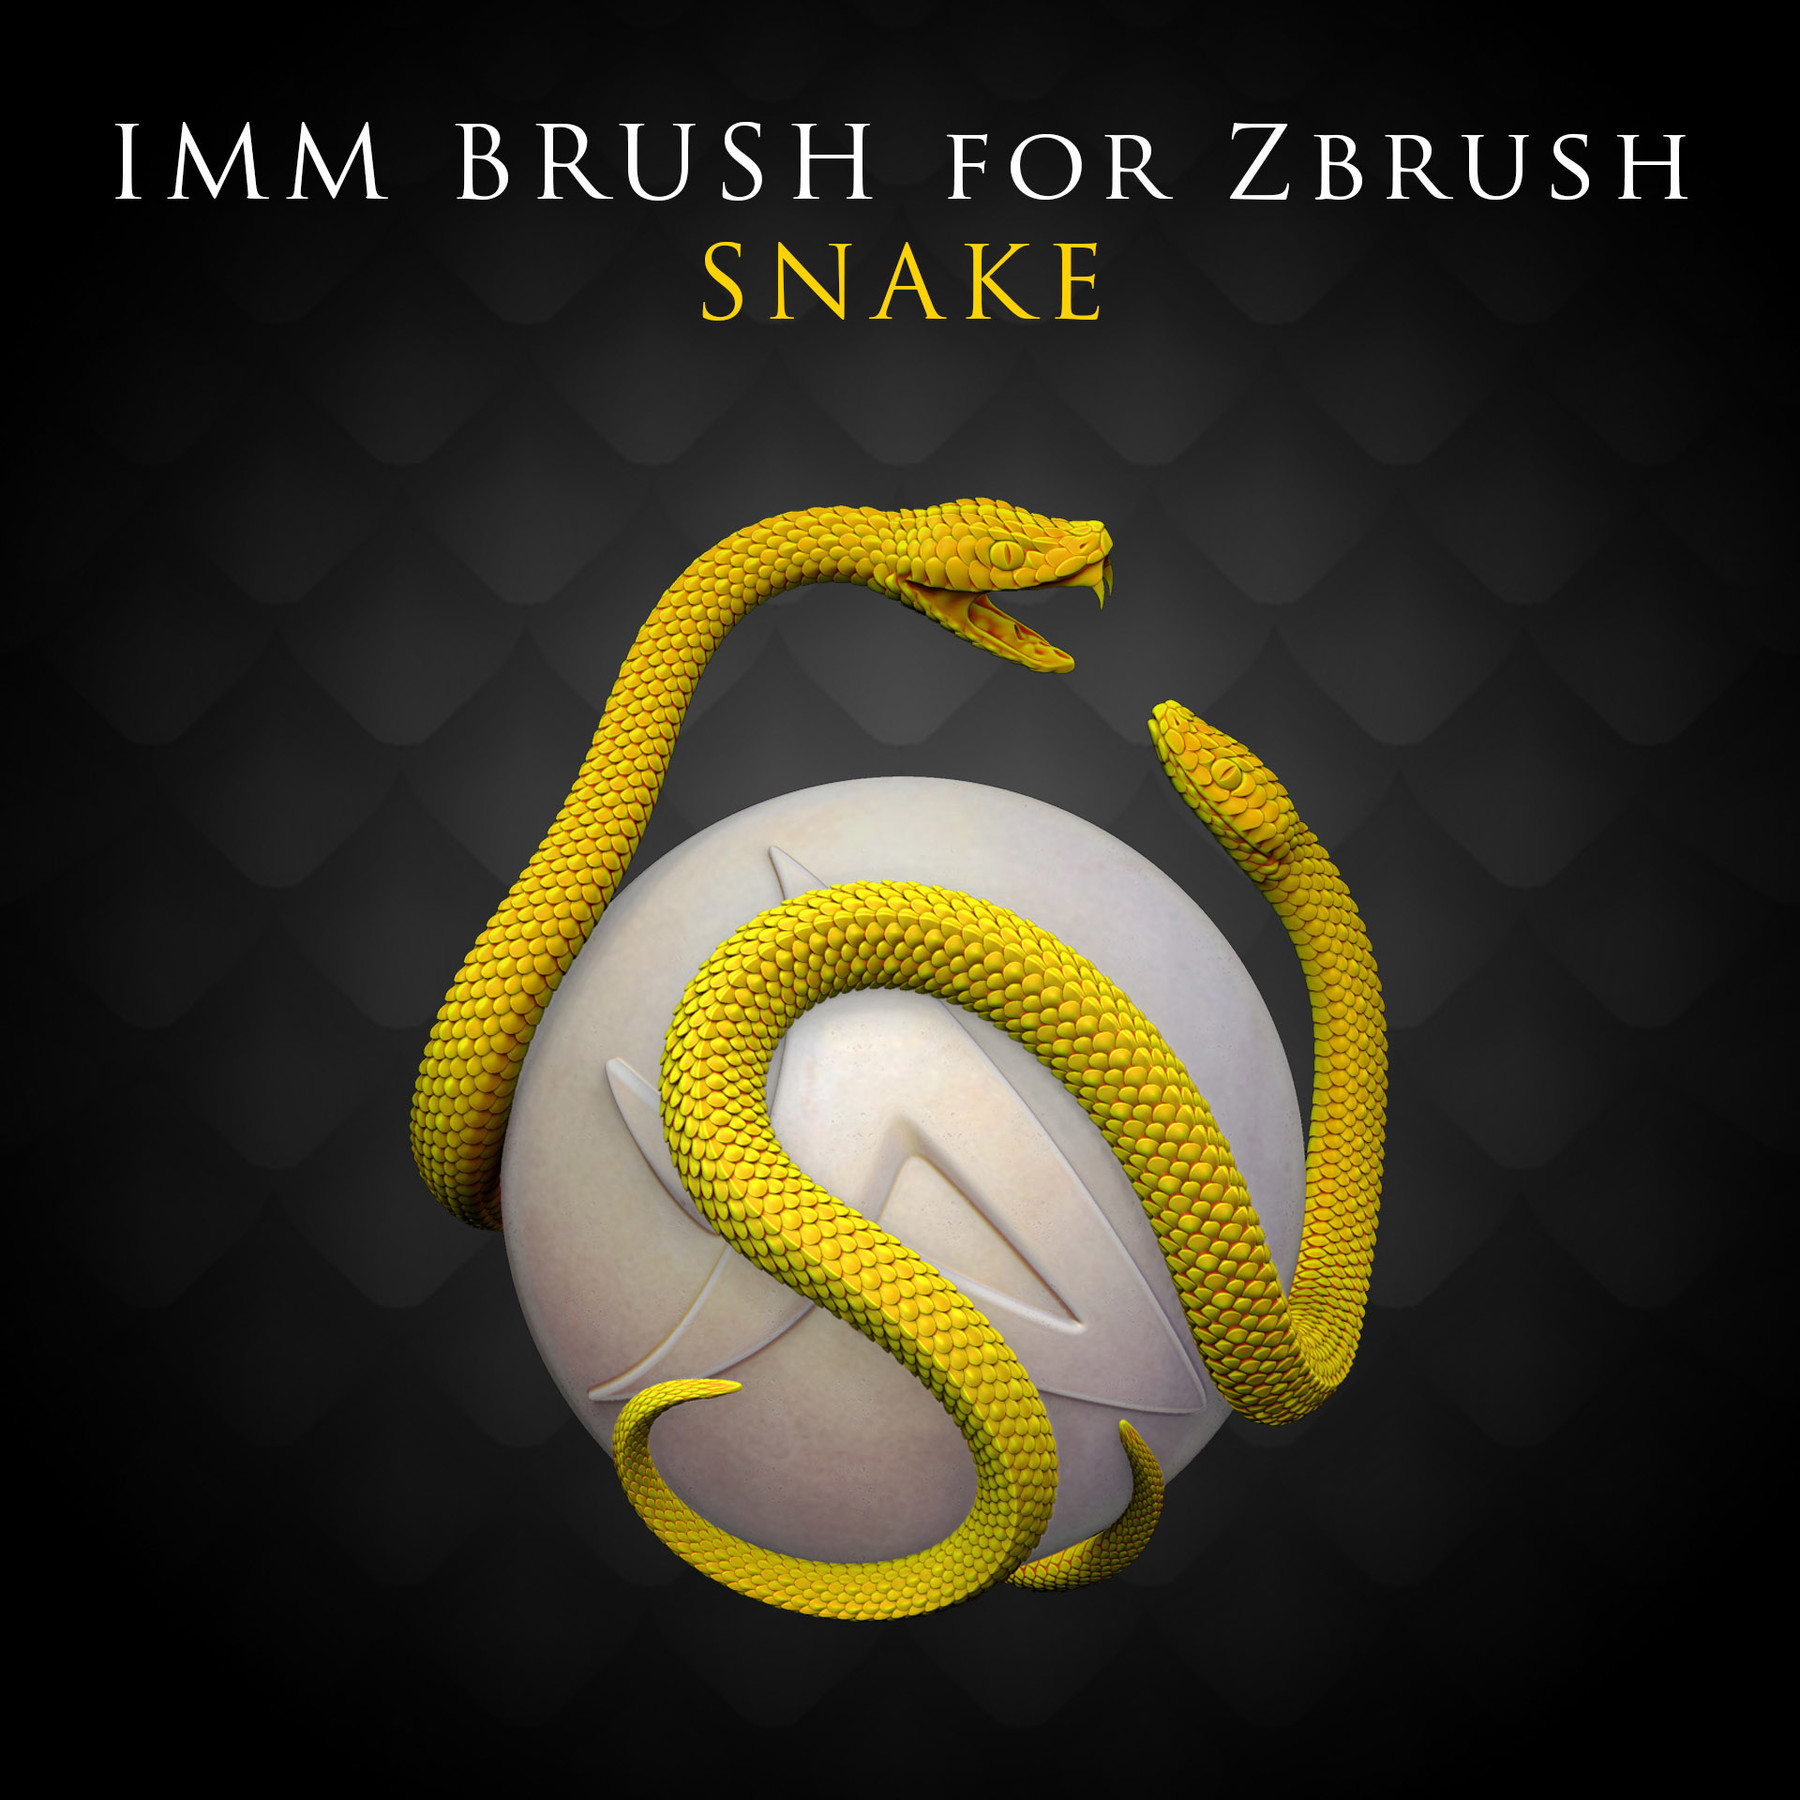 snake brush zbrush